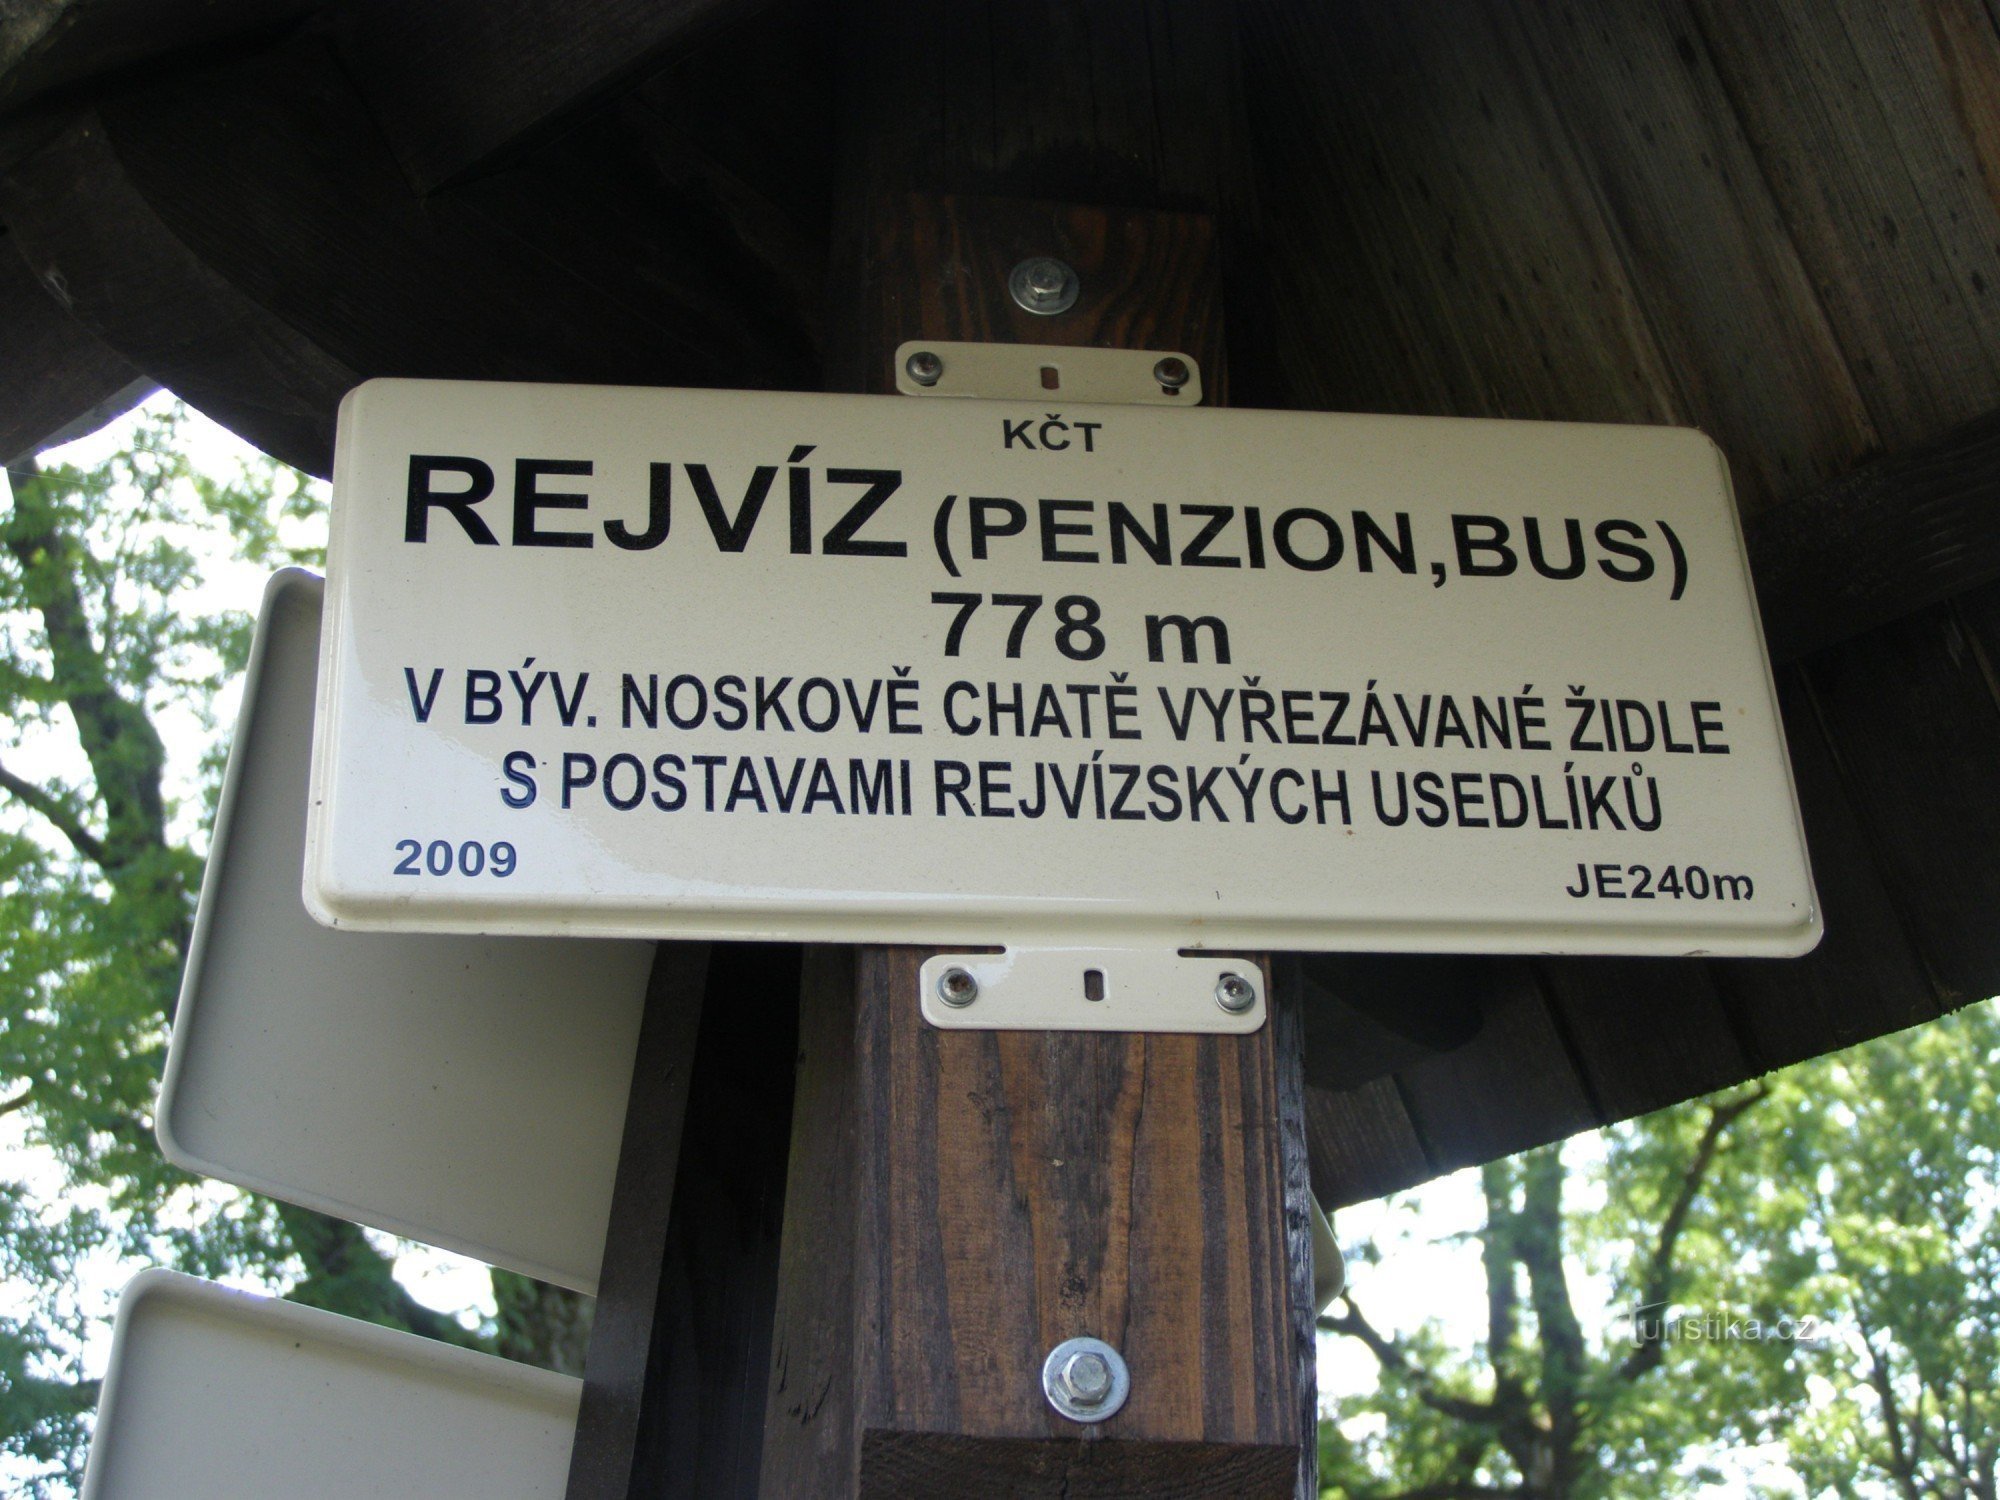 encrucijada turística - Rejvíz, bus, Pensión Rejvíz